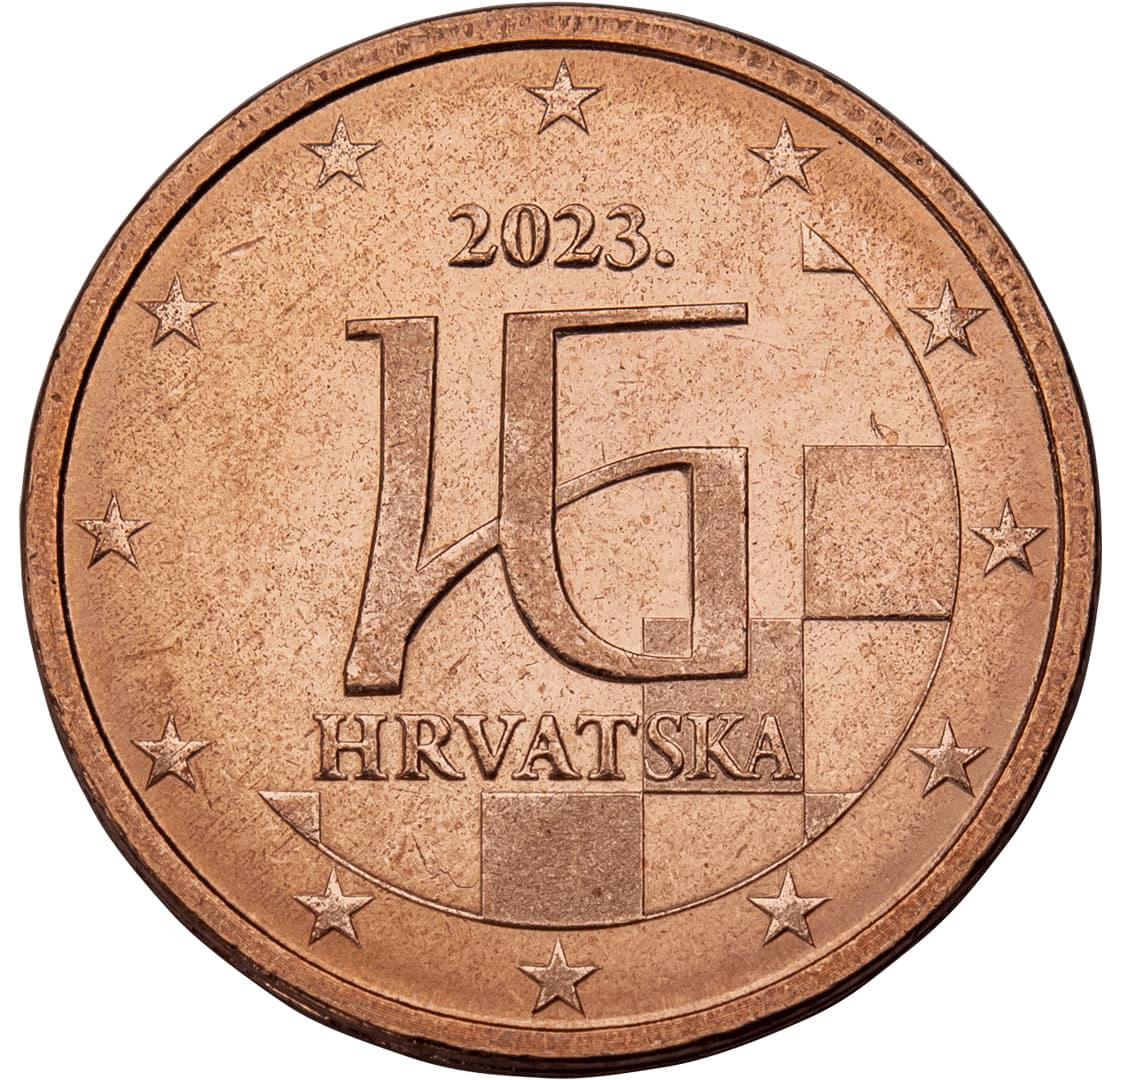 Chorvatsko, mince 2 centy